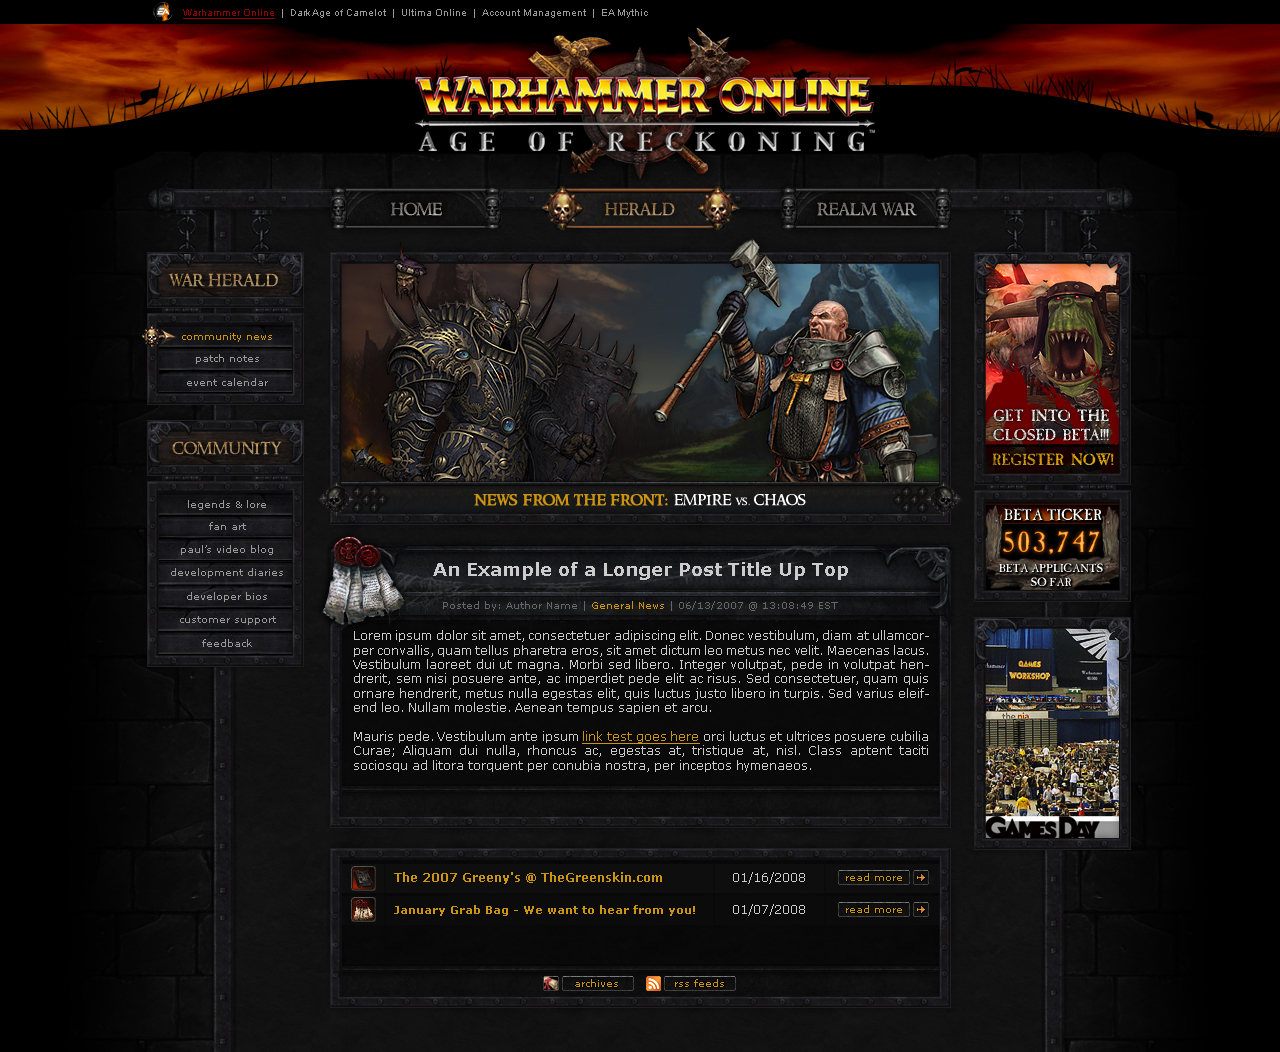 Warhammer Online - Launch Site - Herald